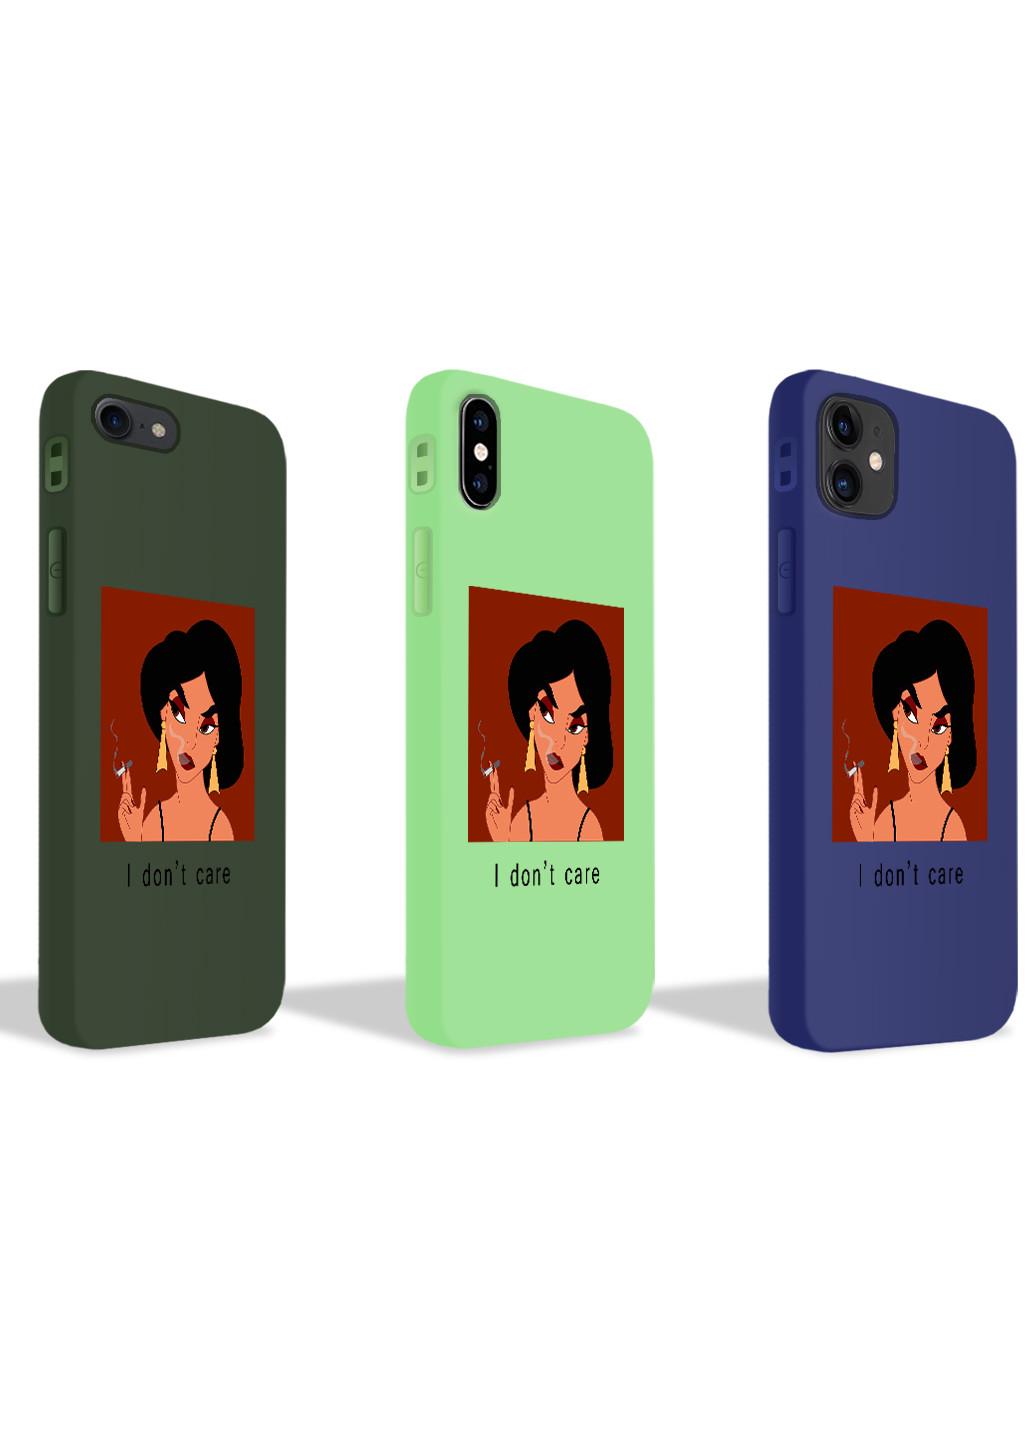 Чехол силиконовый Apple Iphone Xs Max Жасмин Аладдин Дисней (Princess Jasmine Disney) (8226-1430) MobiPrint (219777260)